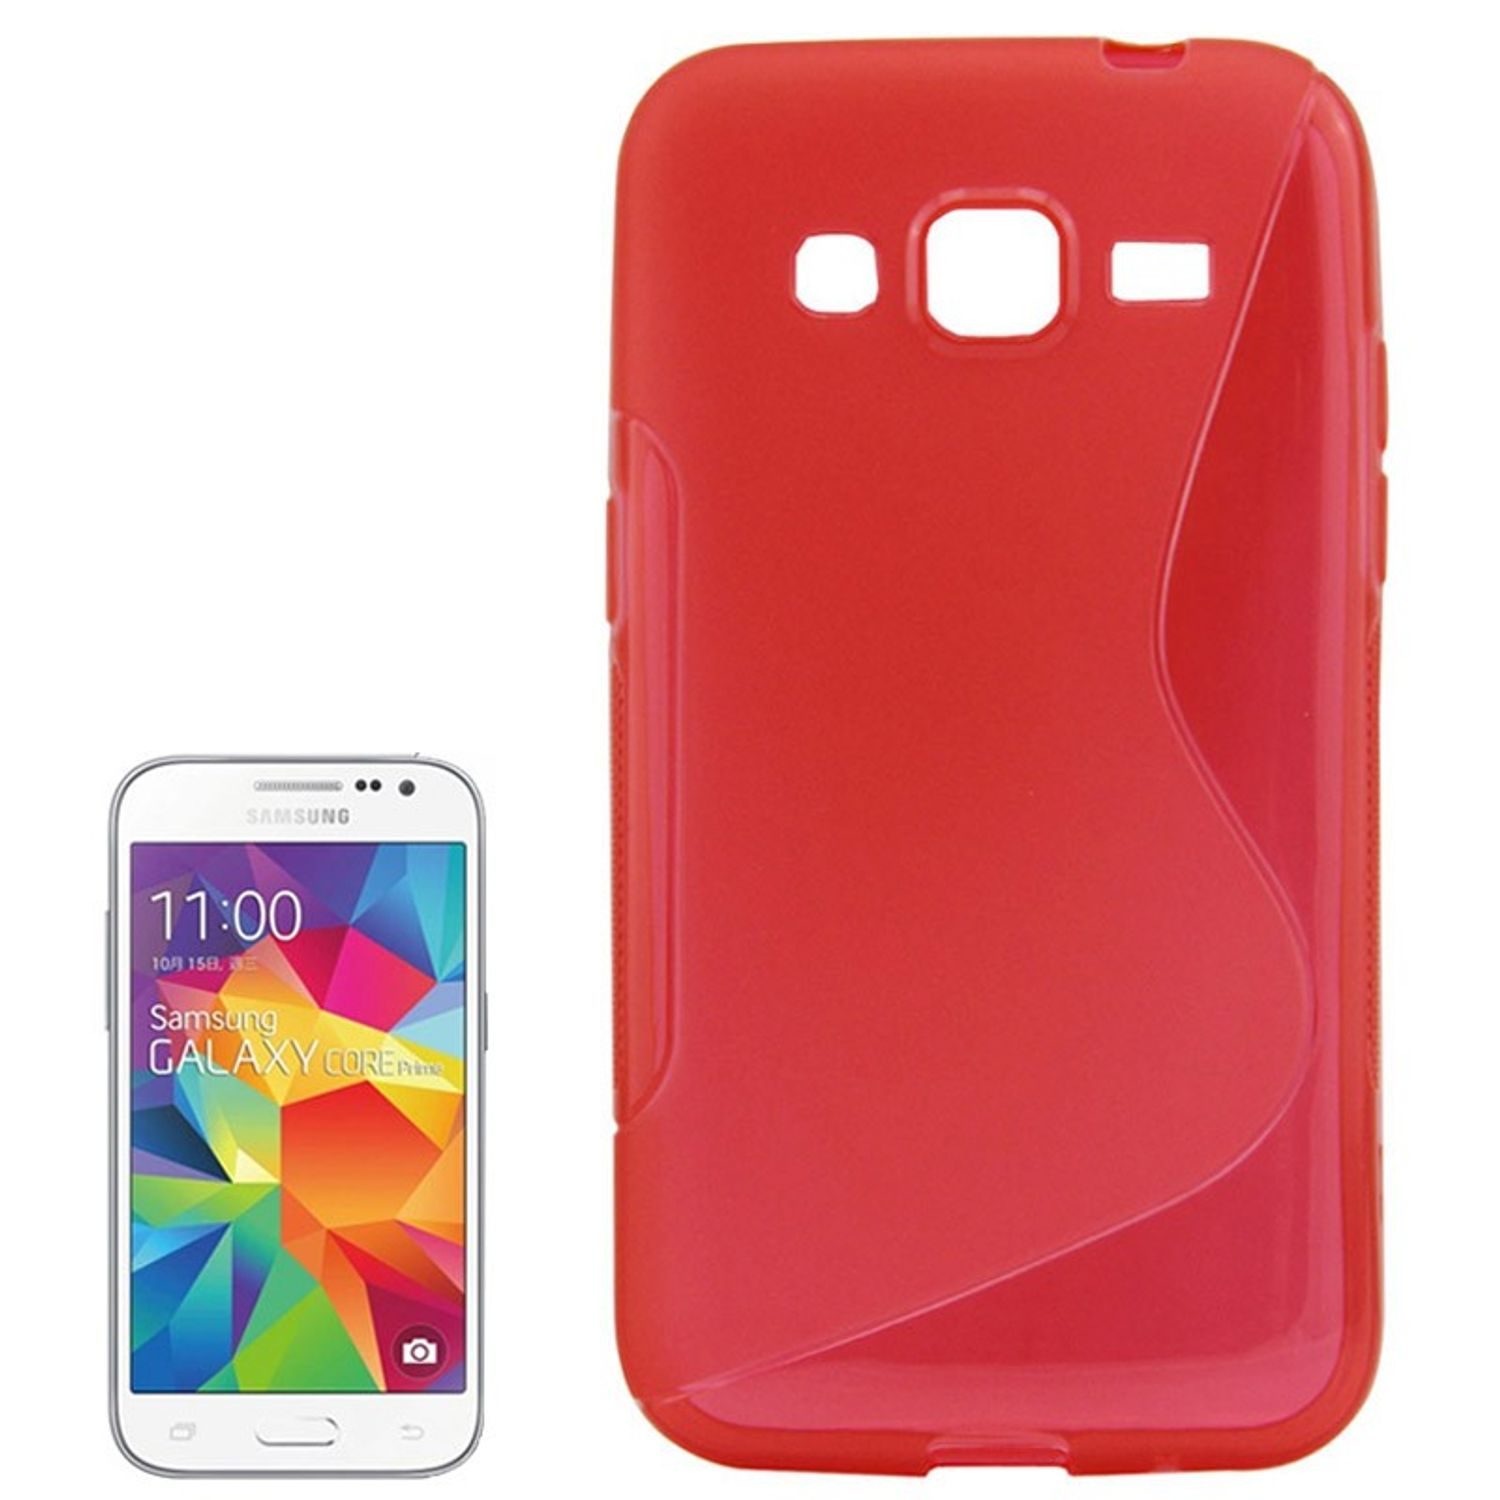 Galaxy KÖNIG Rot Core Prime, Samsung, DESIGN Backcover, Schutzhülle,